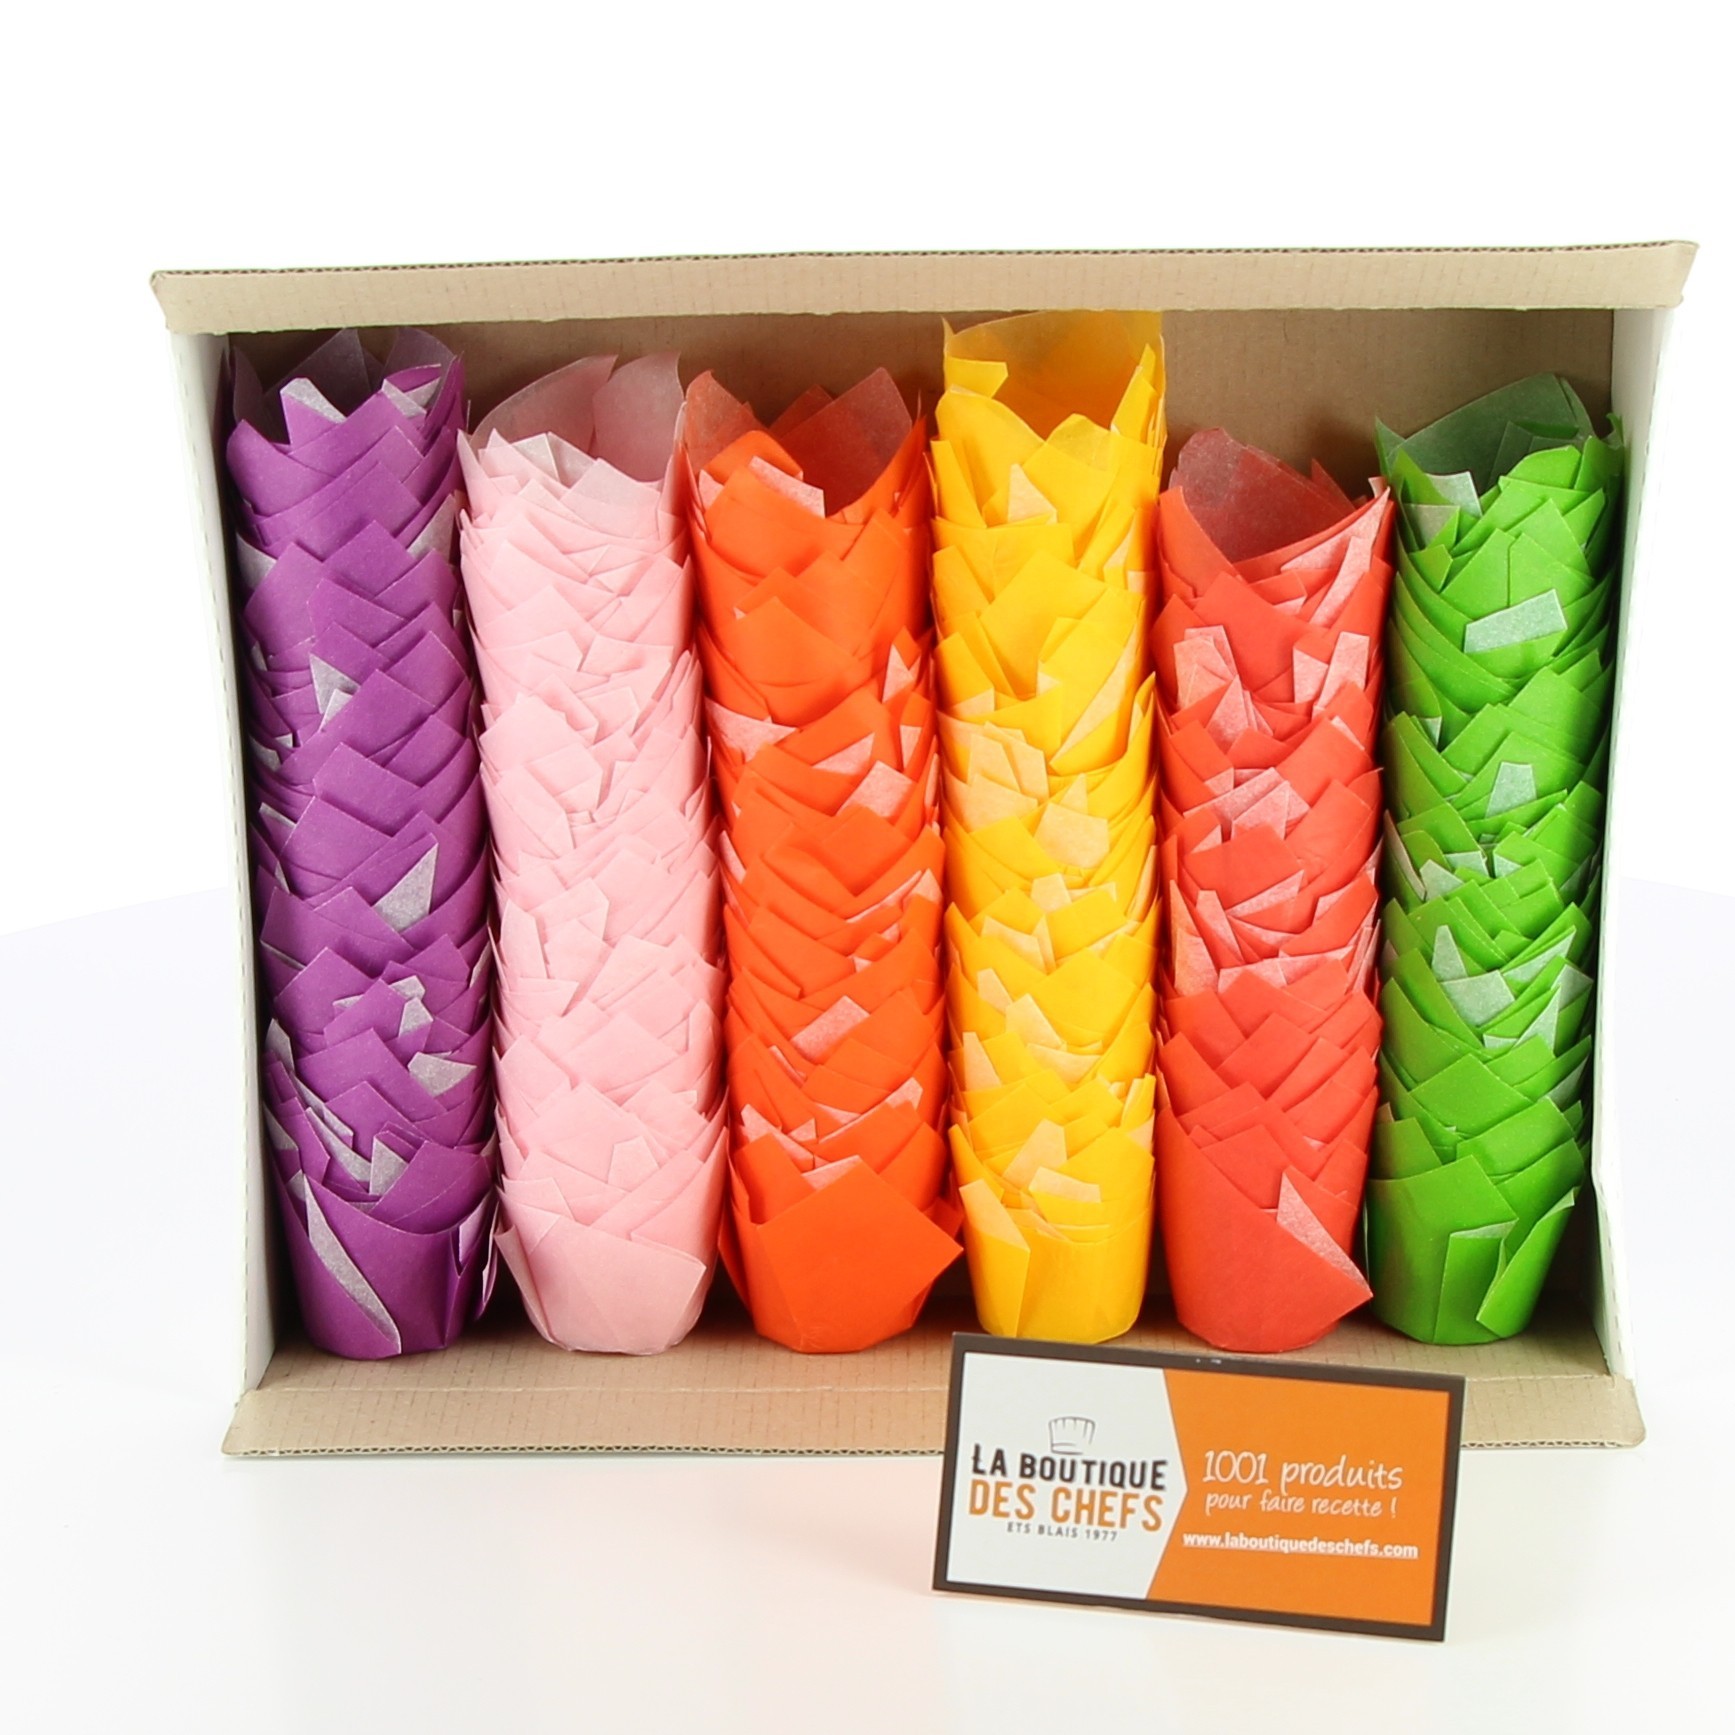 Petites caissettes Tulipcup assortis, couleur - NORDIA